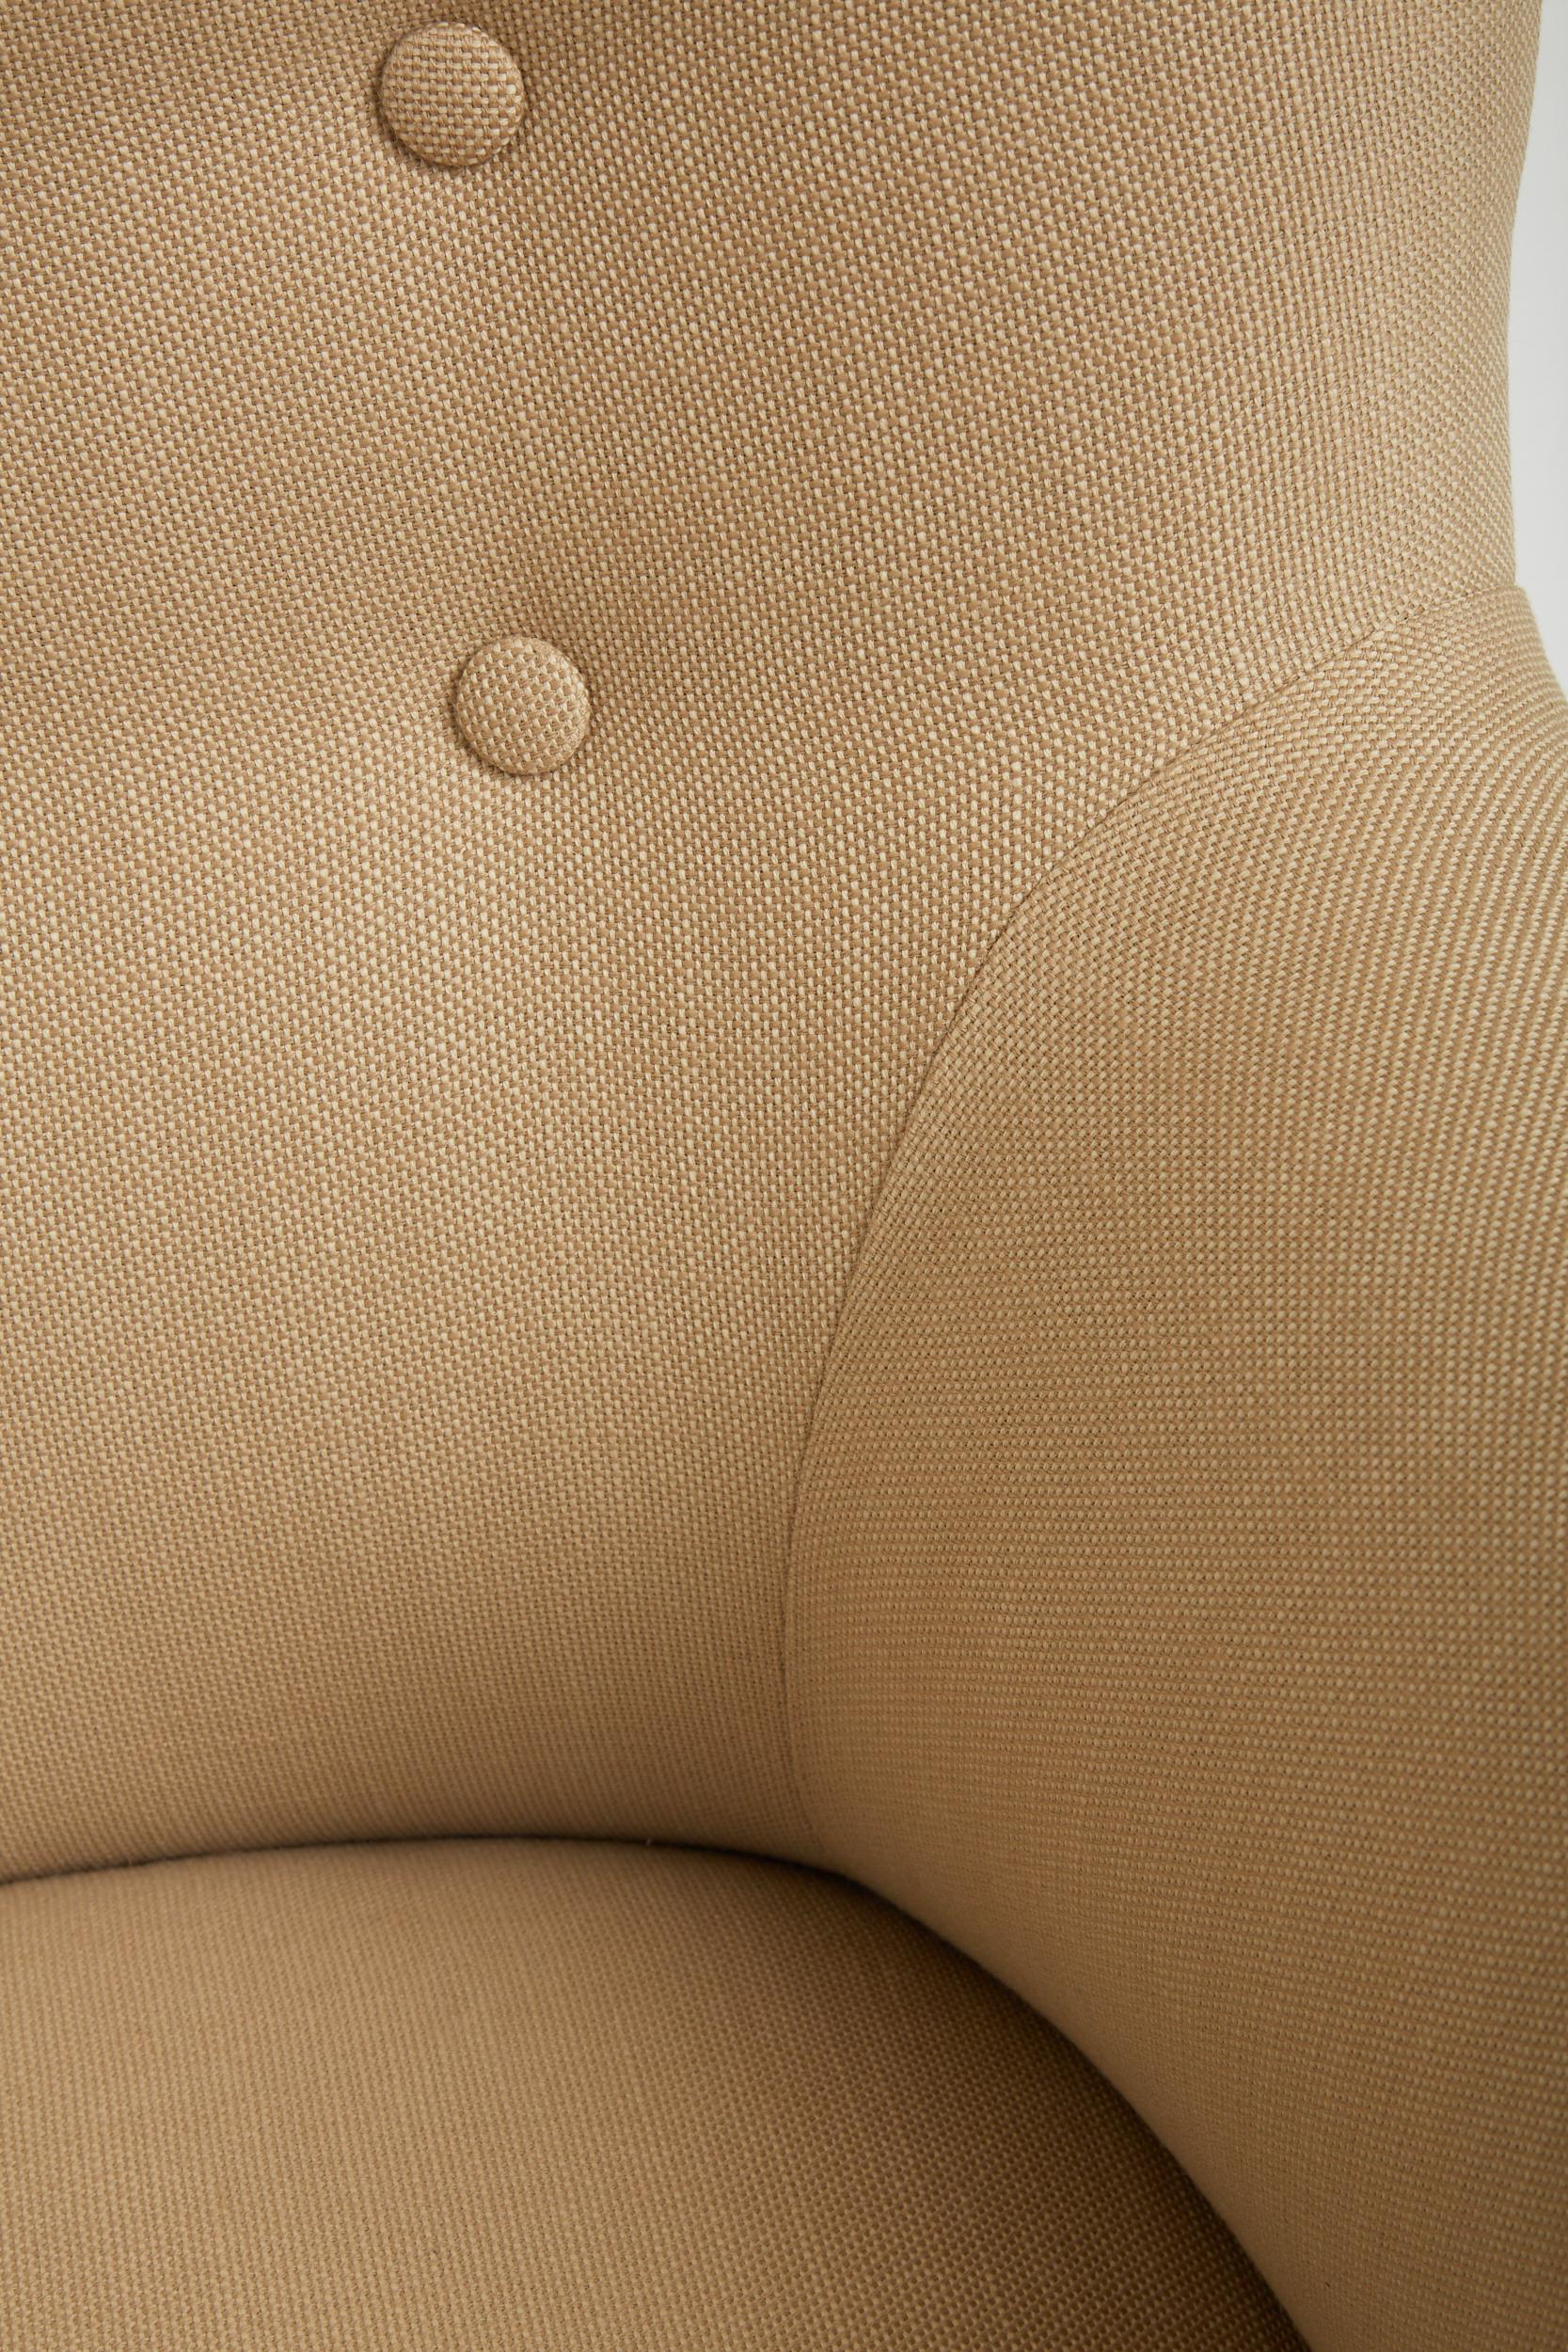 Swedish Modern Buttoned Sofa 7